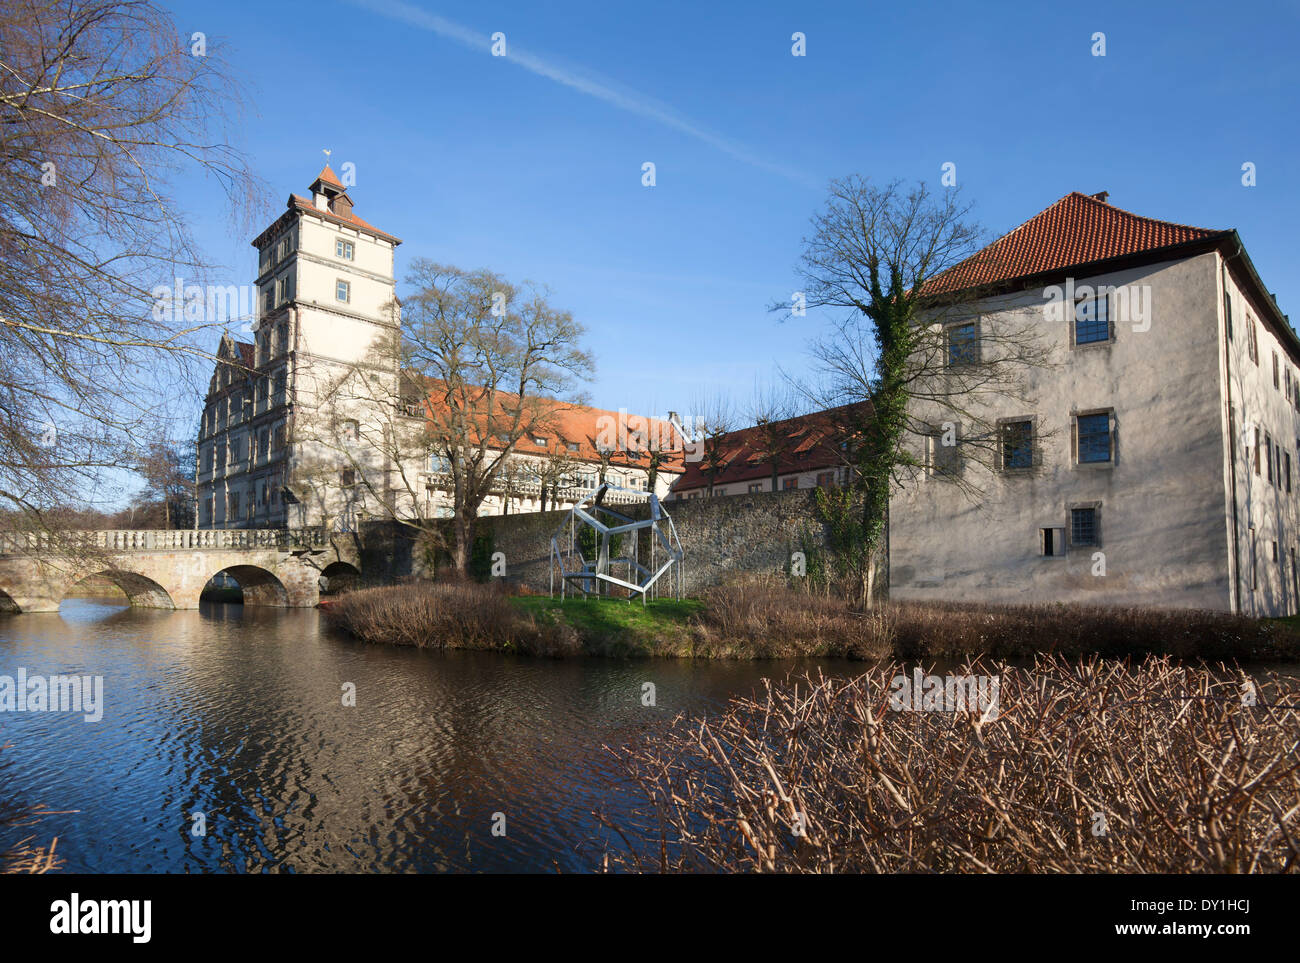 Brake castle, Weserrenaissance Museum, moated castle, Lemgo, North Rhine-Westphalia, Germany, Europe Stock Photo